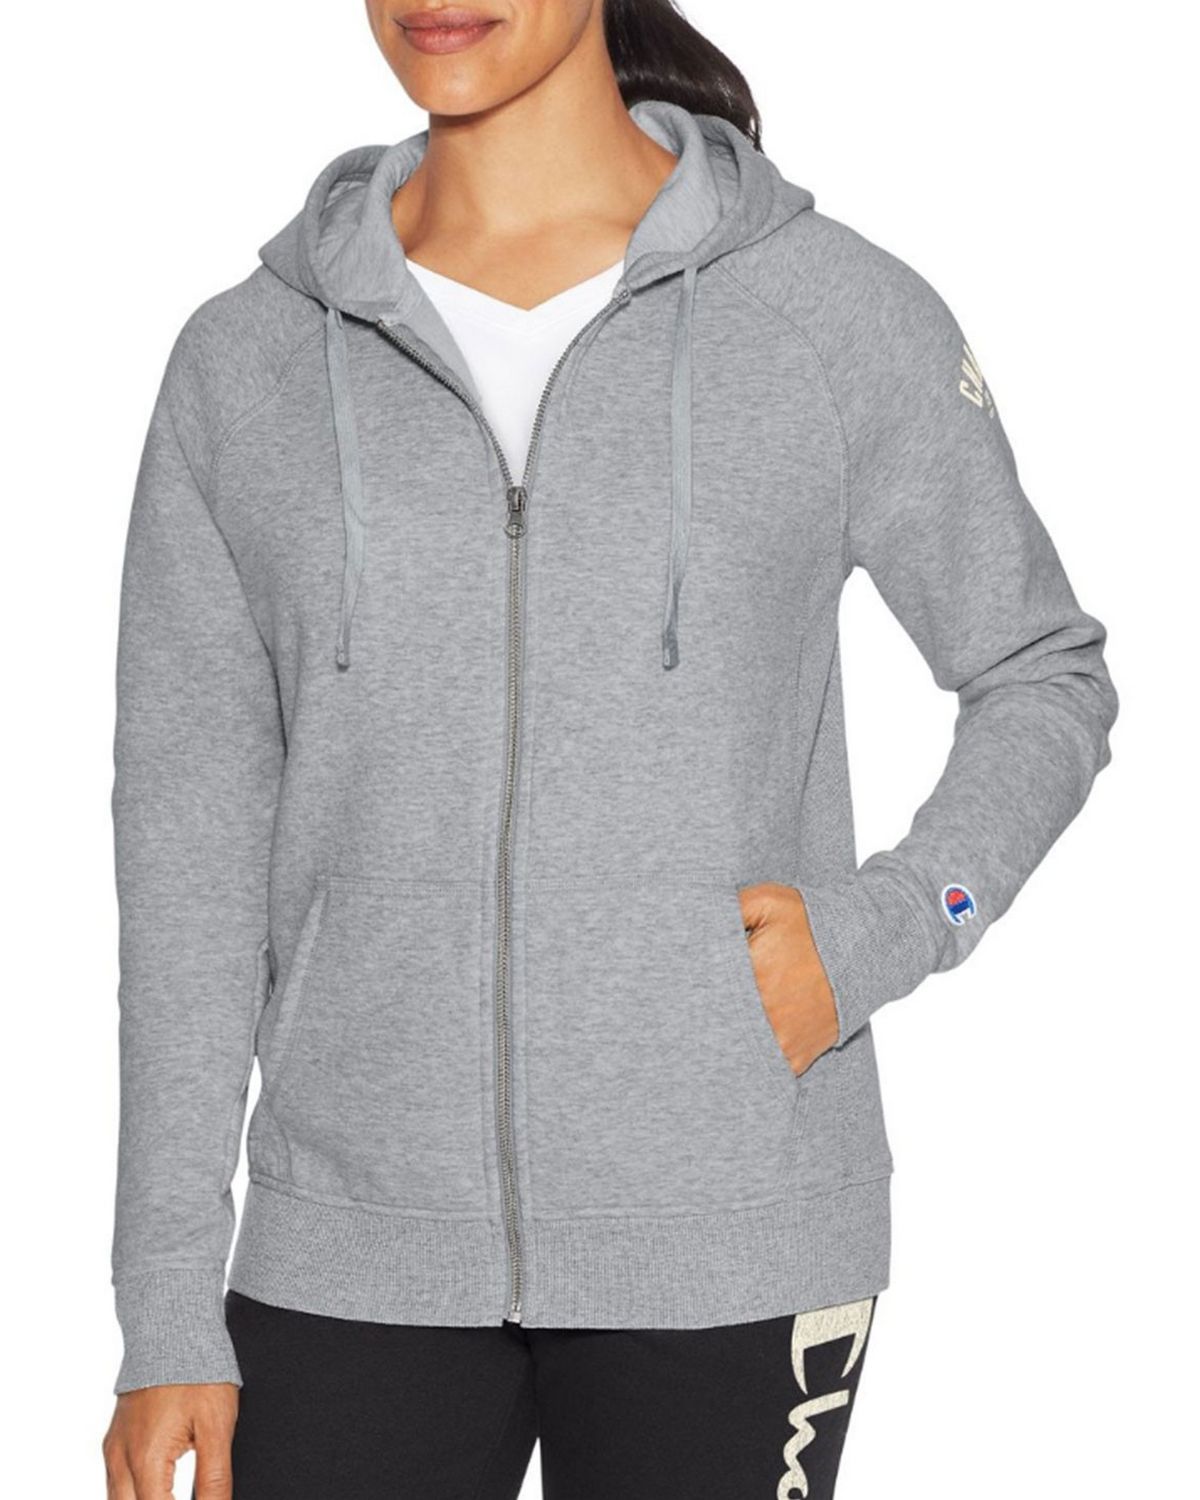 champion women's zip hoodie